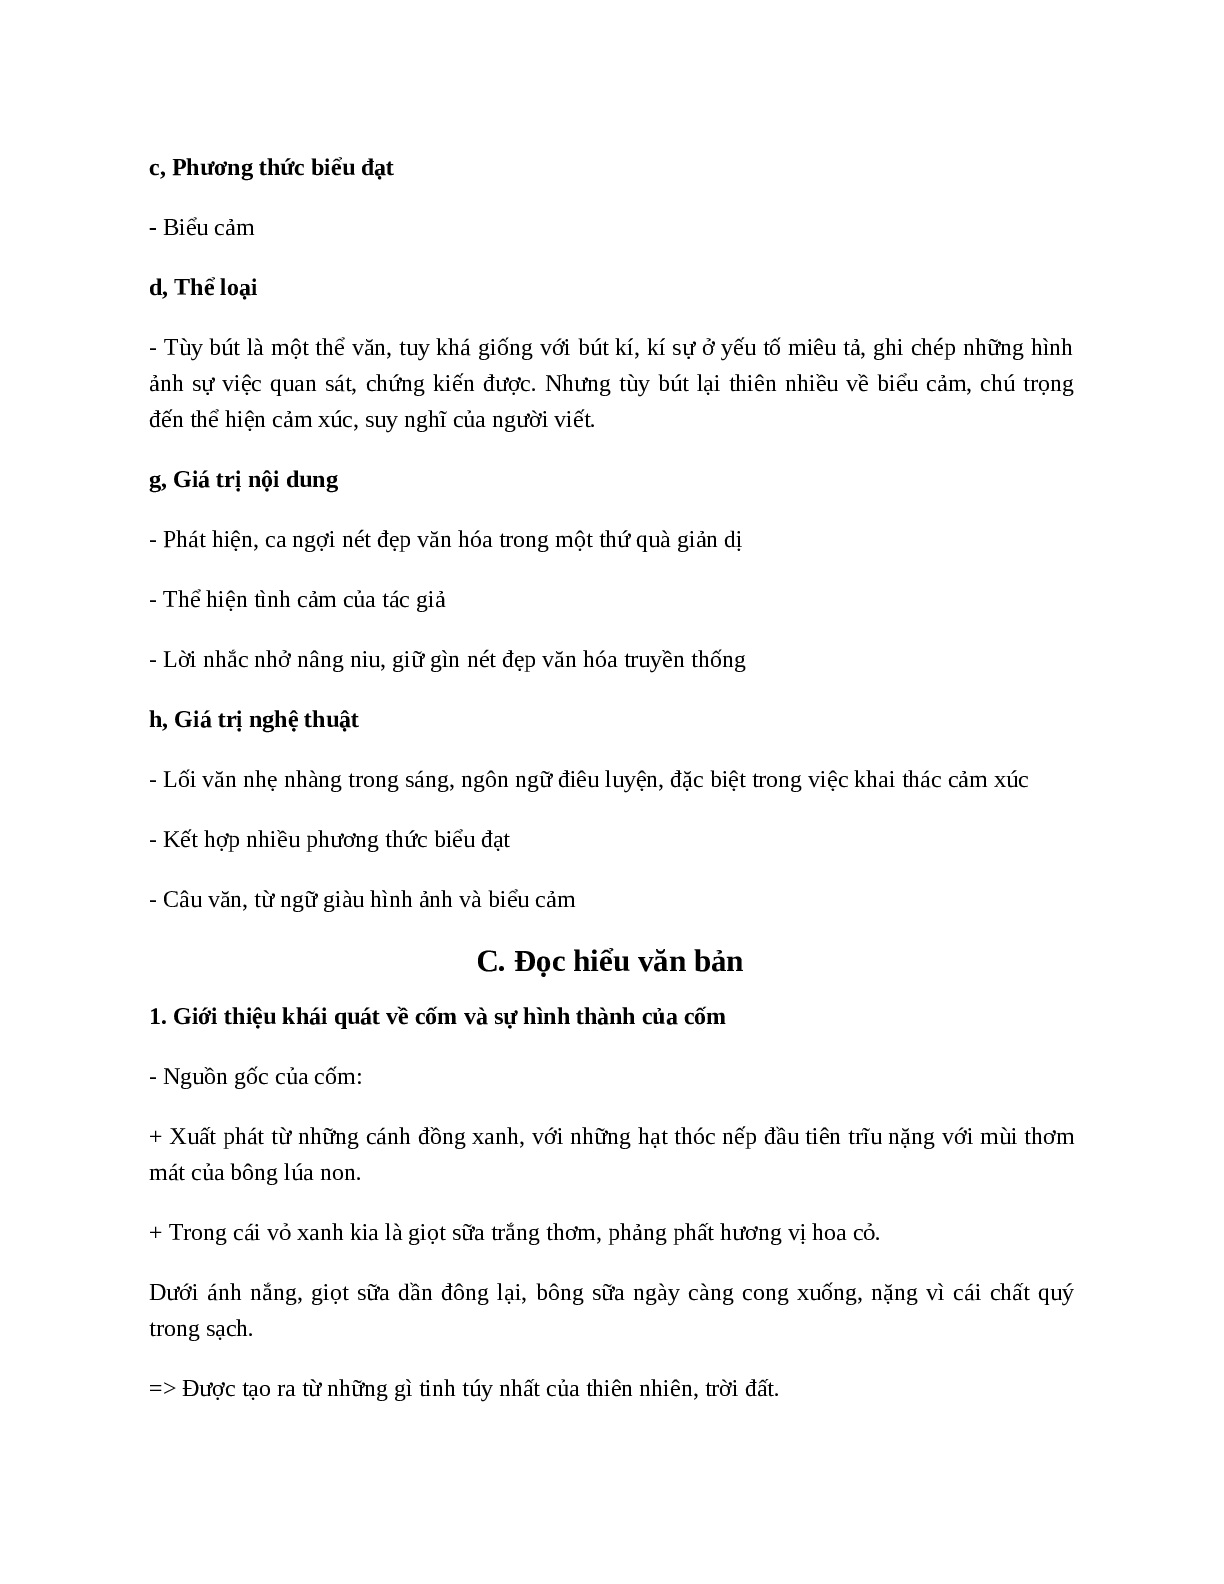 Một thứ quà của lúa non: Cốm - Tác giả tác phẩm - Ngữ văn lớp 7 (trang 2)